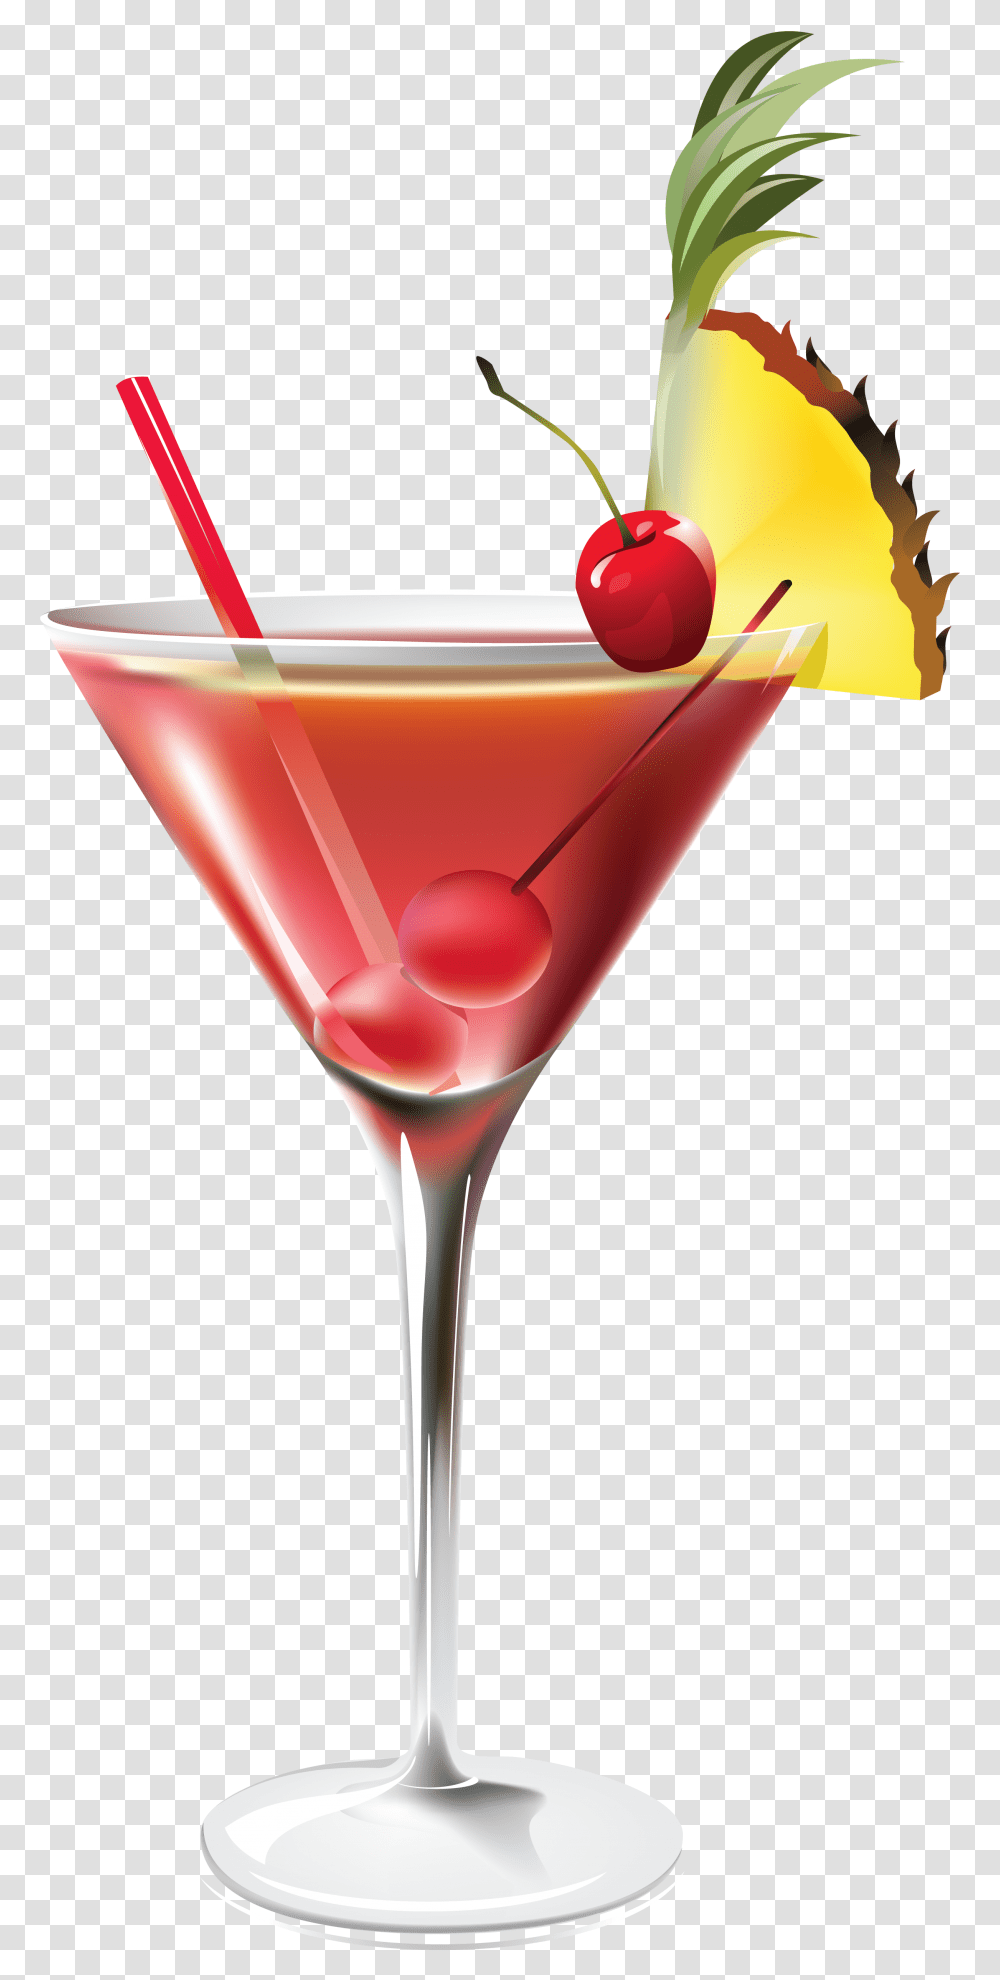 Download Cocktail Image Cocktail, Alcohol, Beverage, Drink, Martini Transparent Png